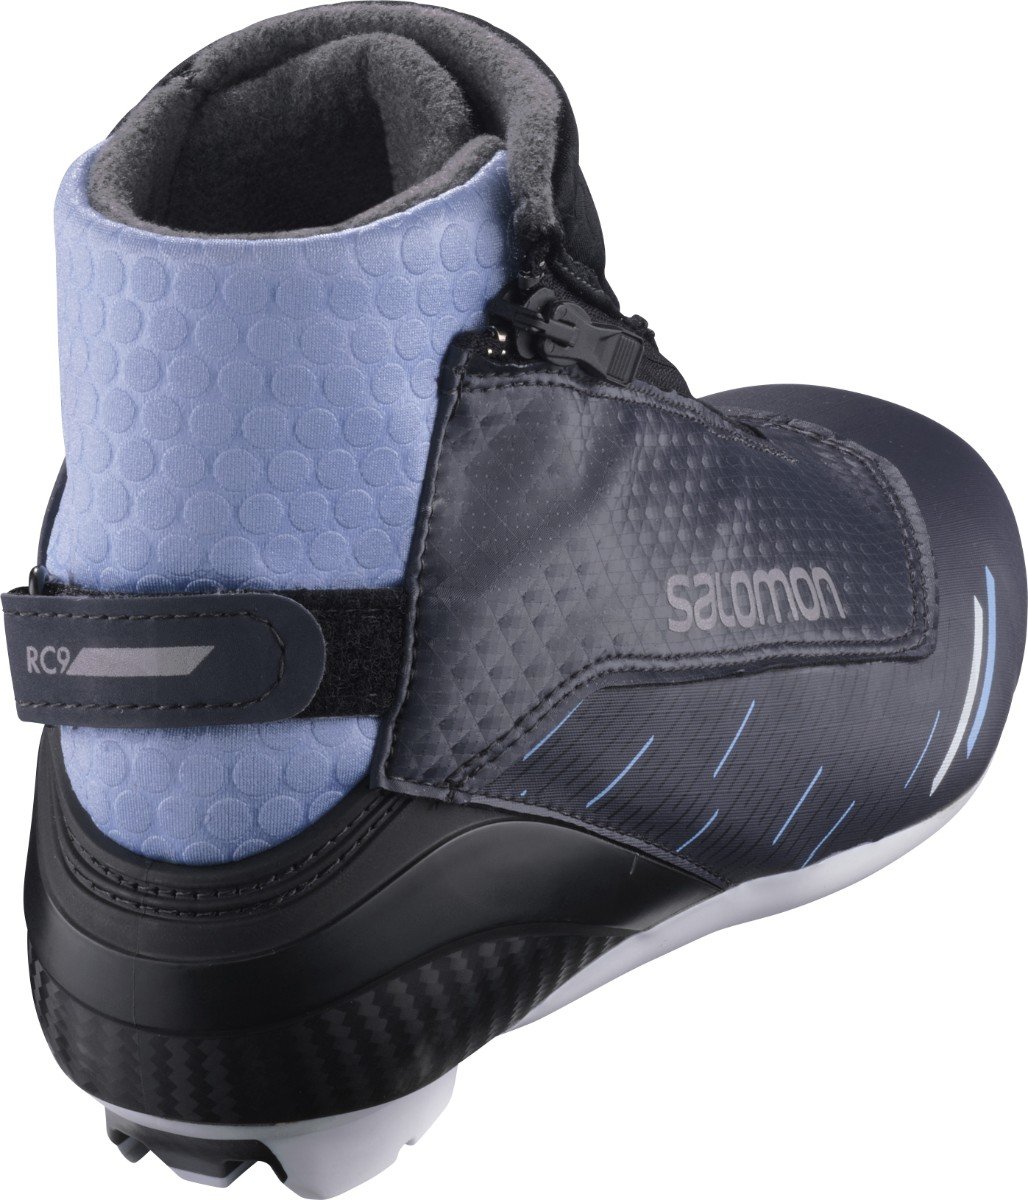 Boty na běžky Salomon RC9 VITANE PROLINK W - černá/modrá